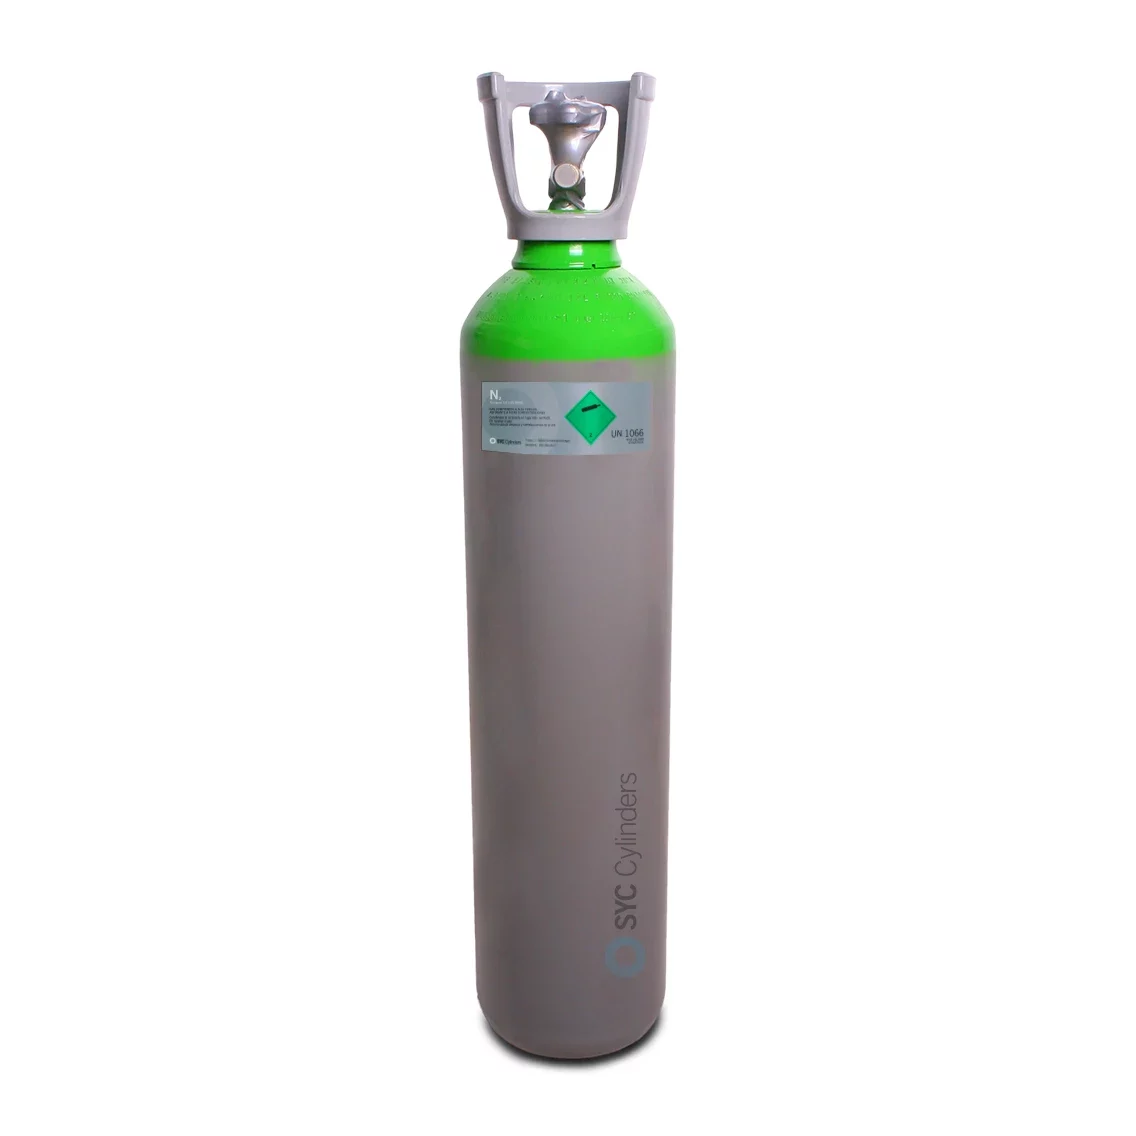 Botella (Cilindro) de gas lleno Nitrógeno 8L 150bar con regulador Turbo